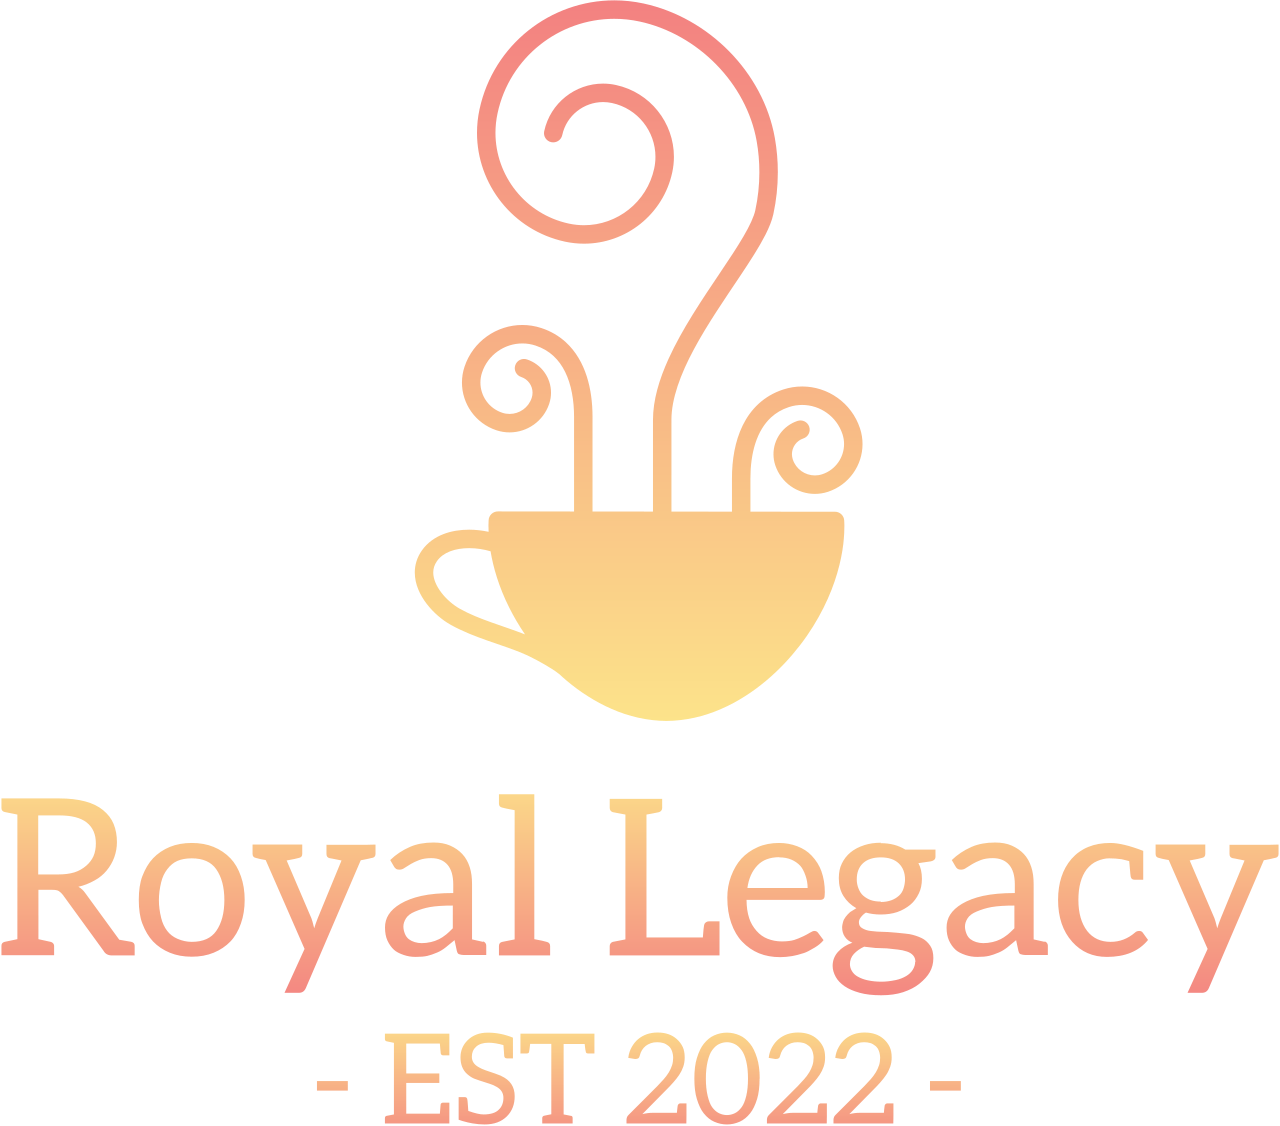 Royal Legacy's logo